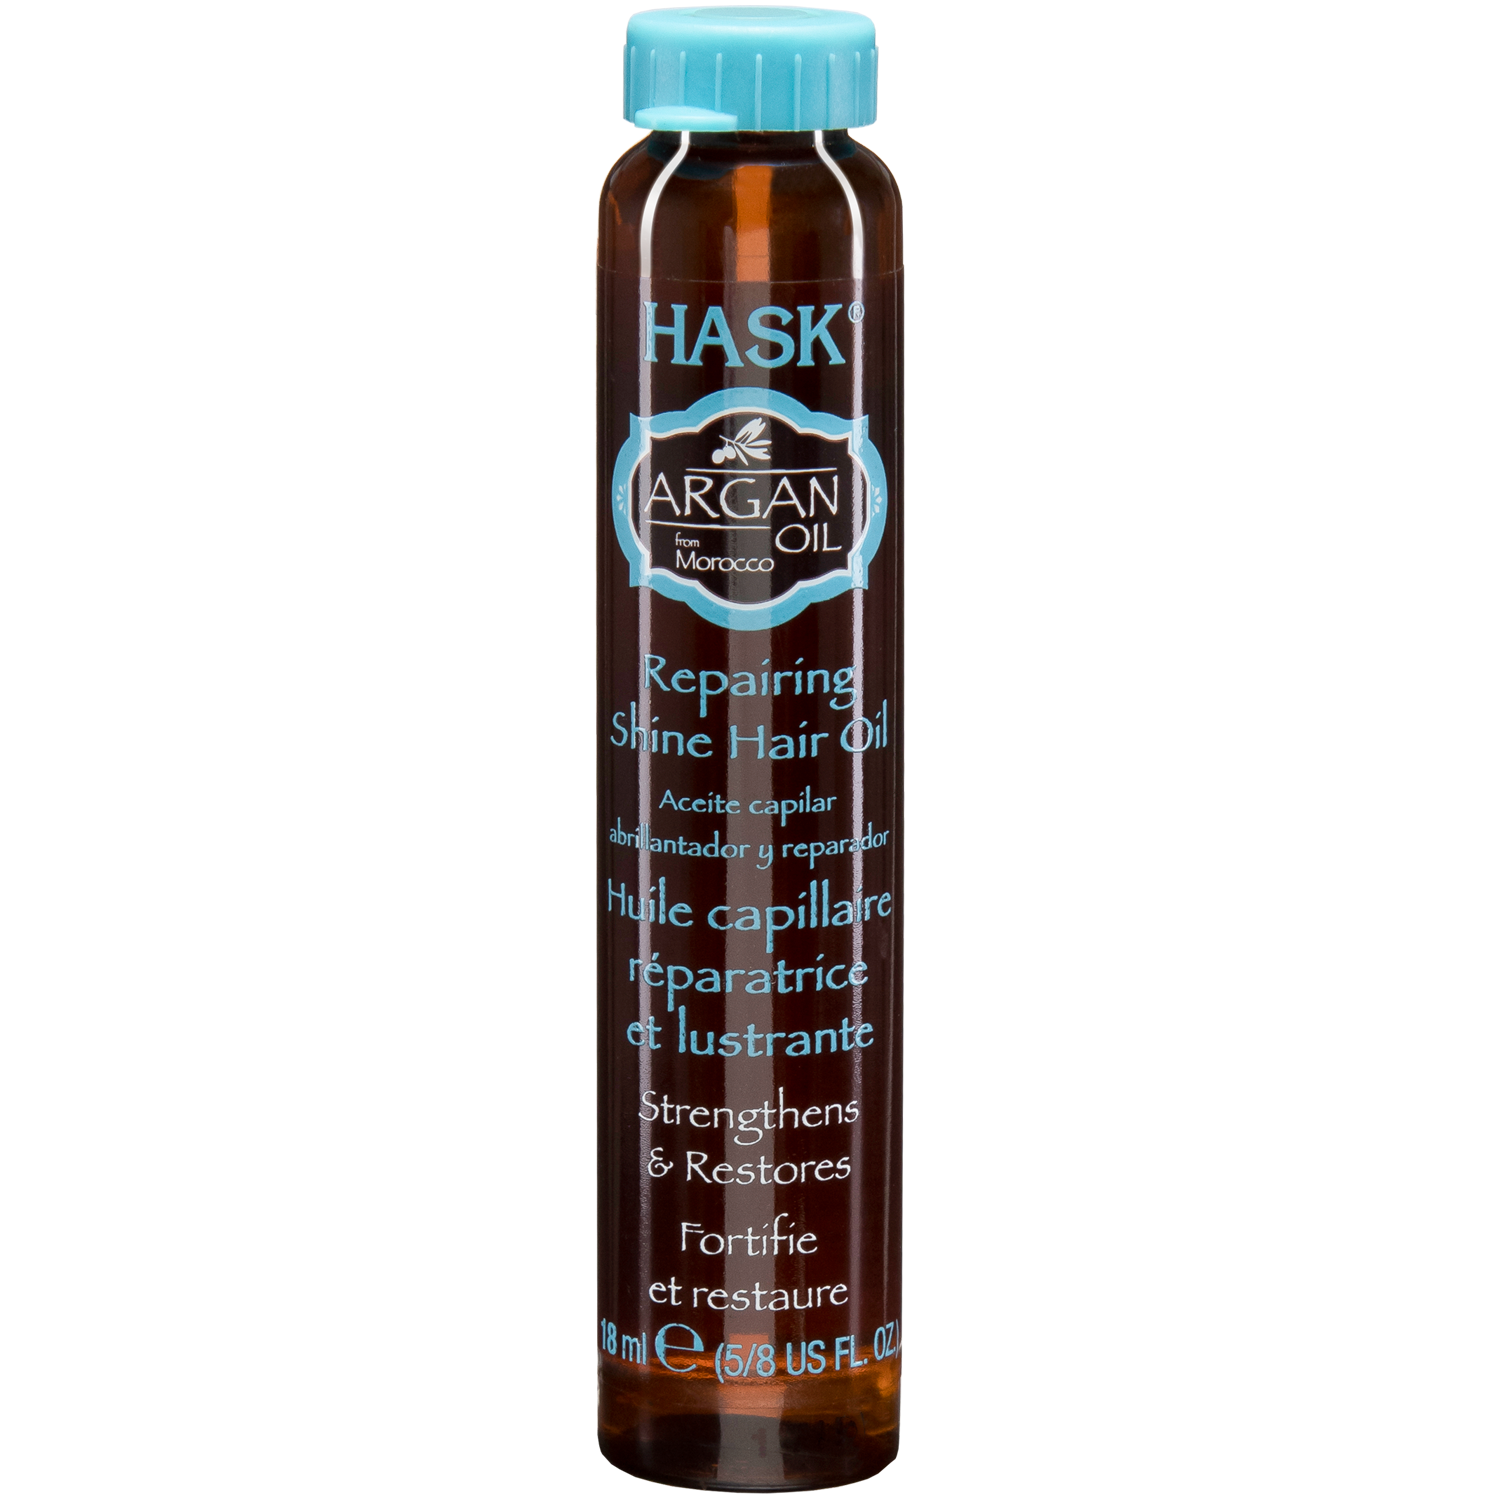 hask argan oil marocco olejek do włosów